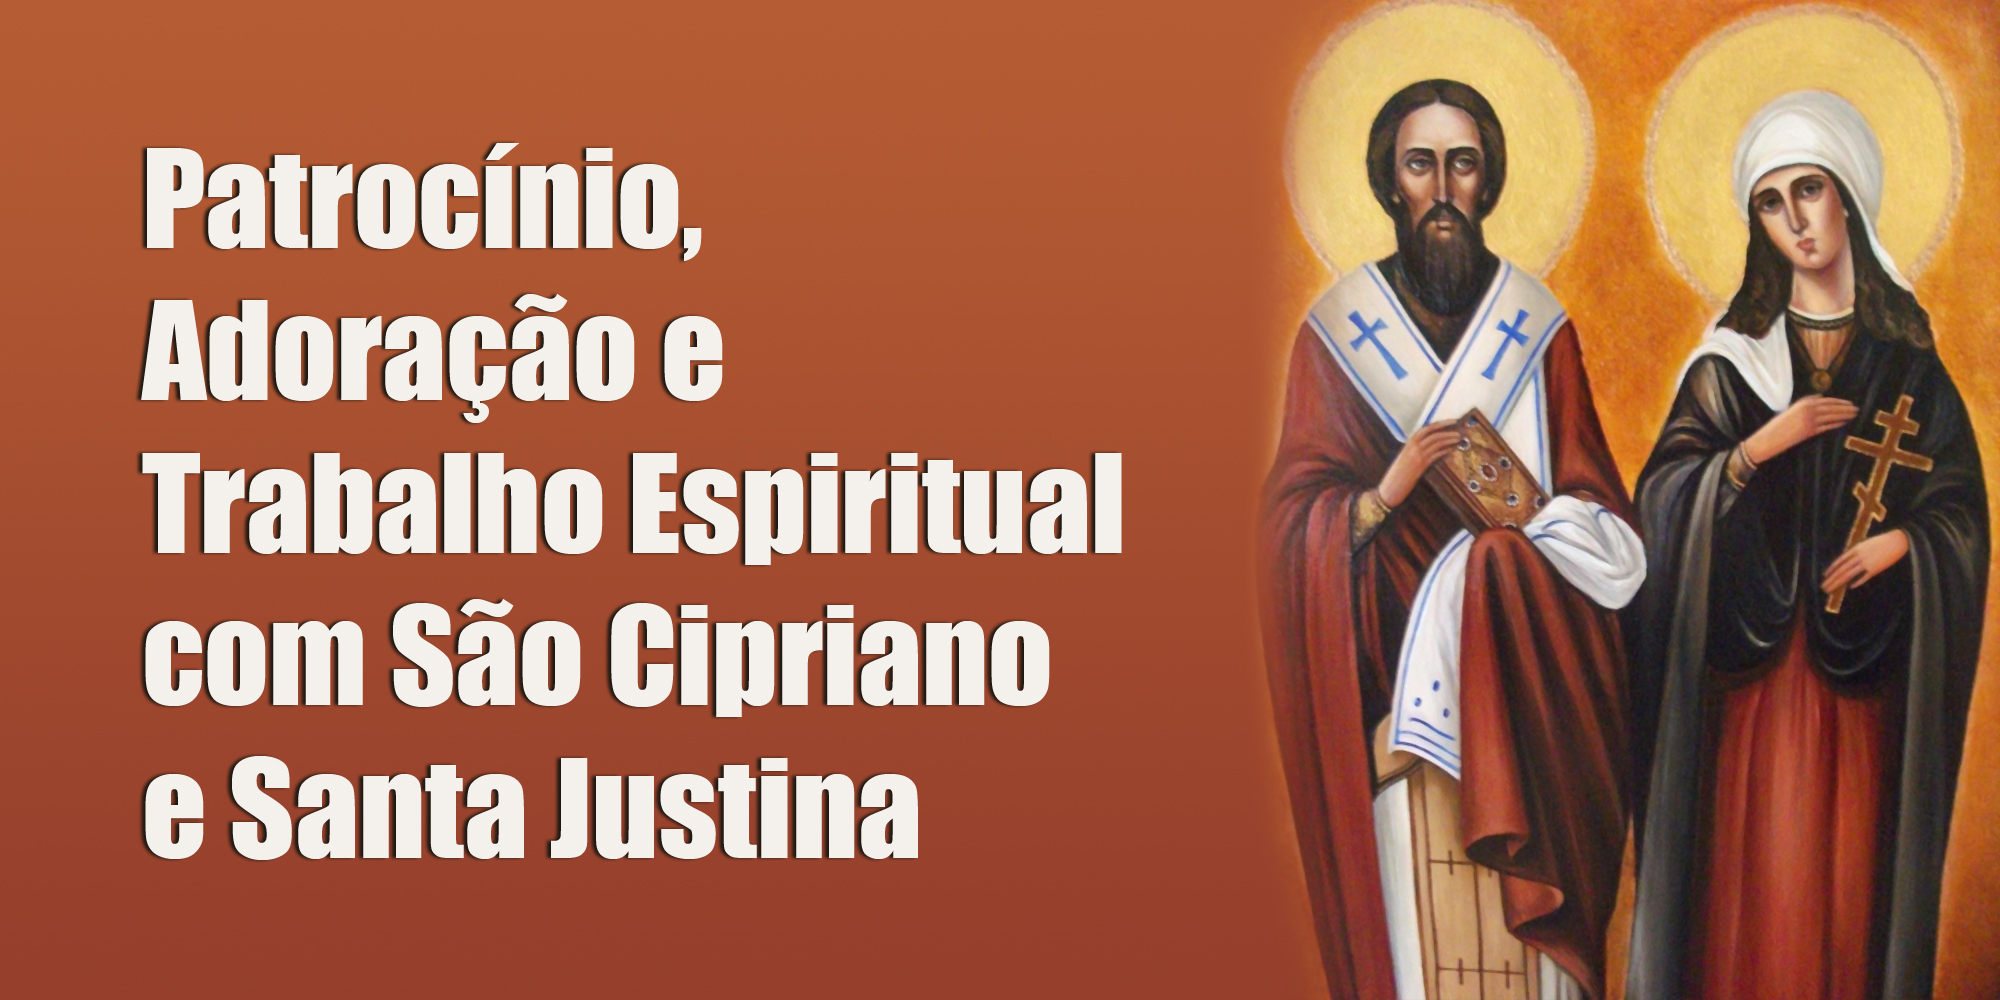 Patrocínio, Adoração e Trabalho Espiritual com São Cipriano e Santa Justina